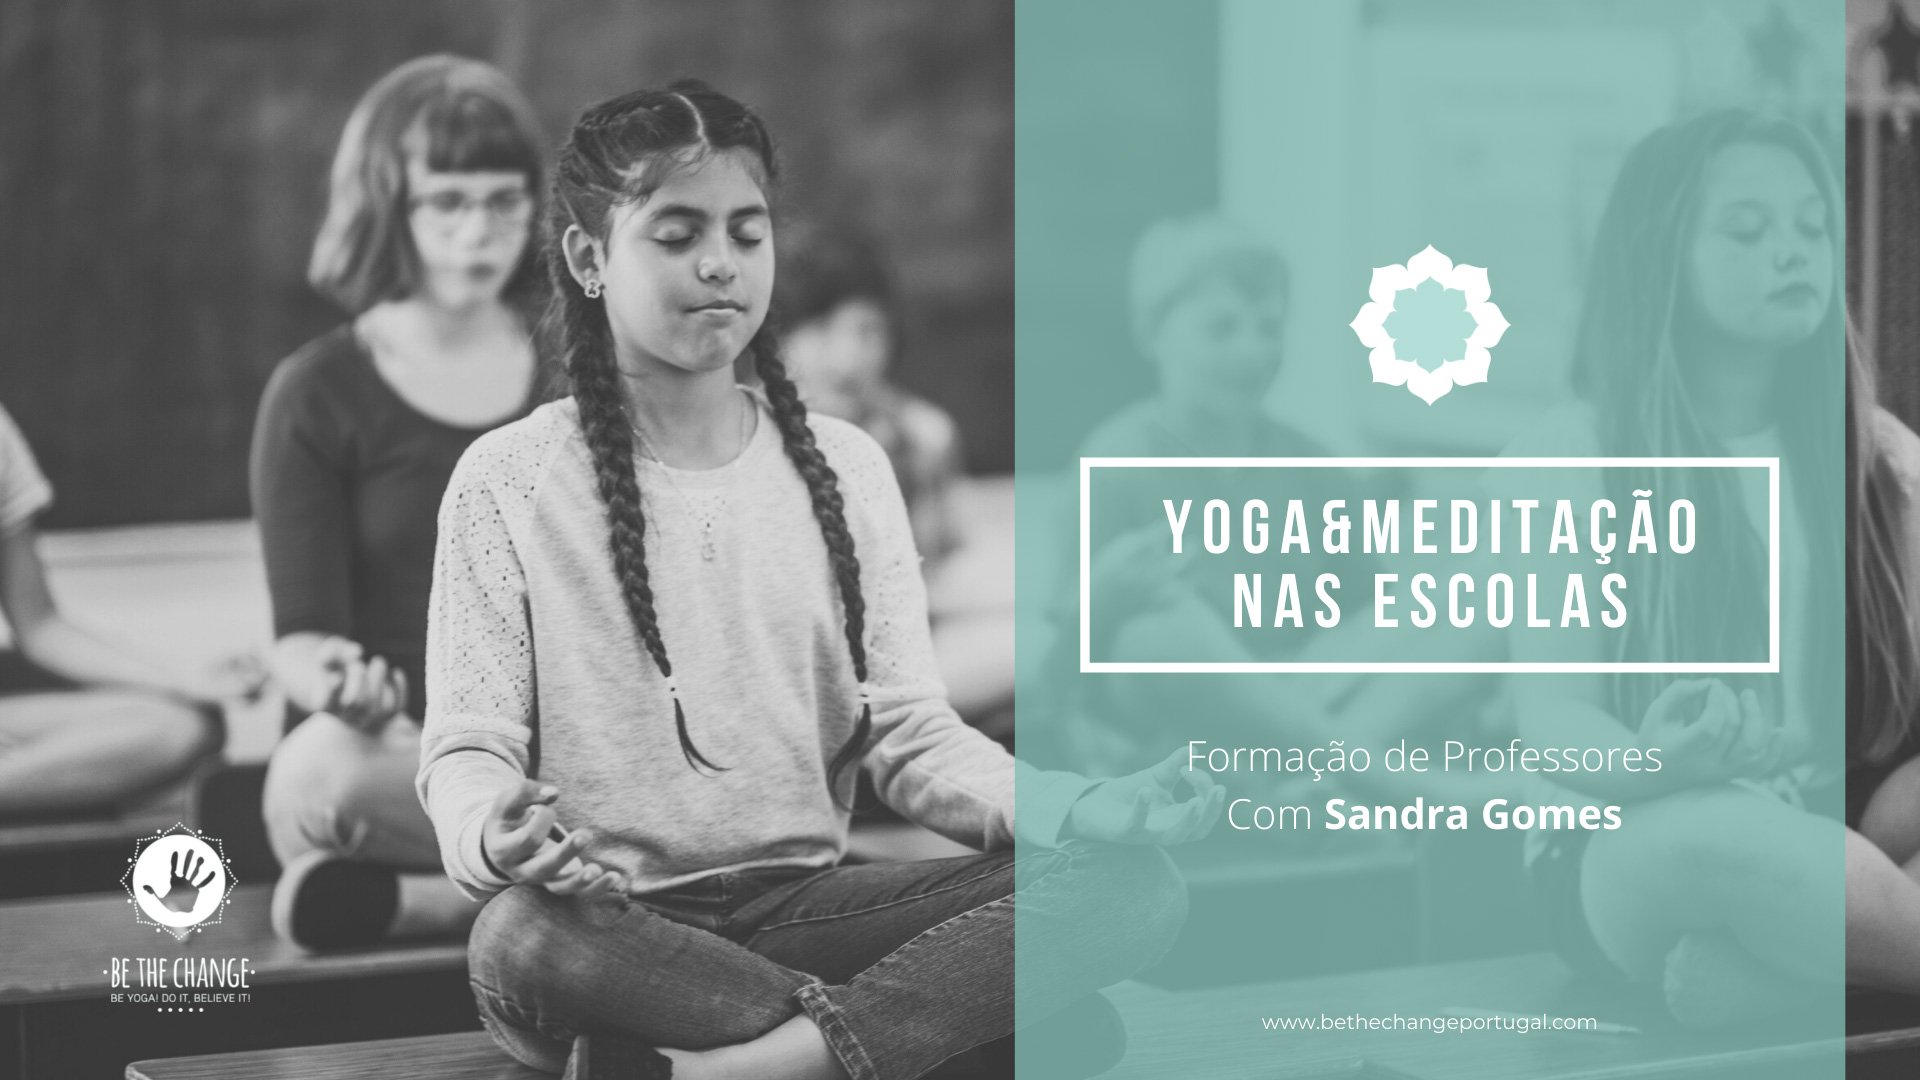 Yoga&Meditação nas escolas- Formação de Professores com Sandra Gomes